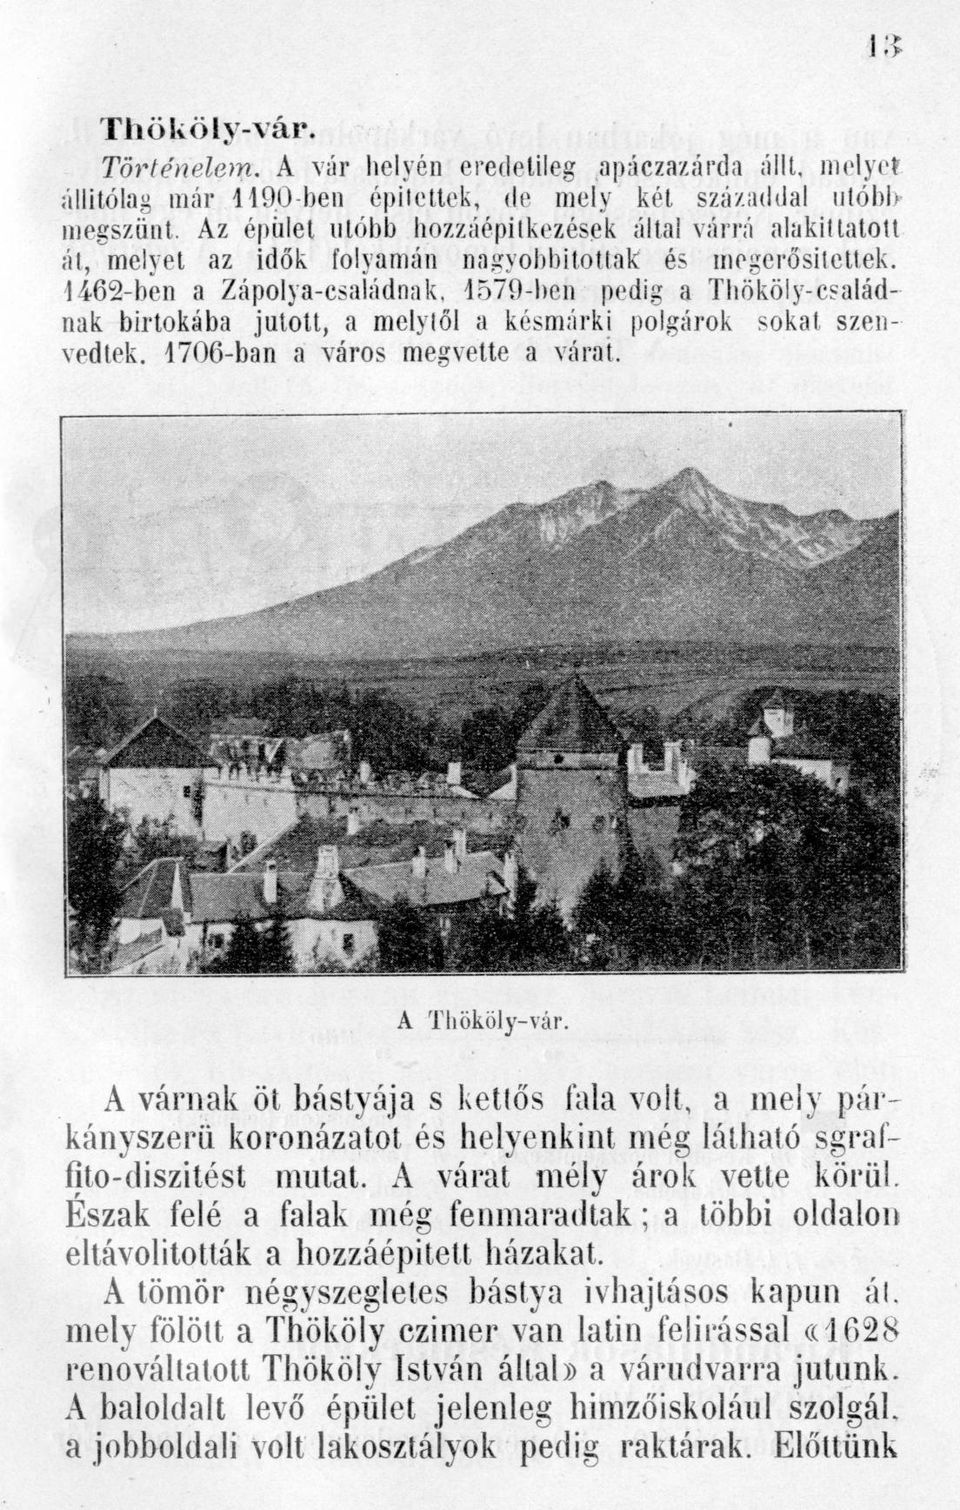 1462-ben a Zápolya-családnak, 1579-ben pedig a Thököly-esaládnak birtokába jutott, a melytől a késmárki polgárok sokat szen vedtek. 1706-ban a város megvette a várat. A Thököly-vár.